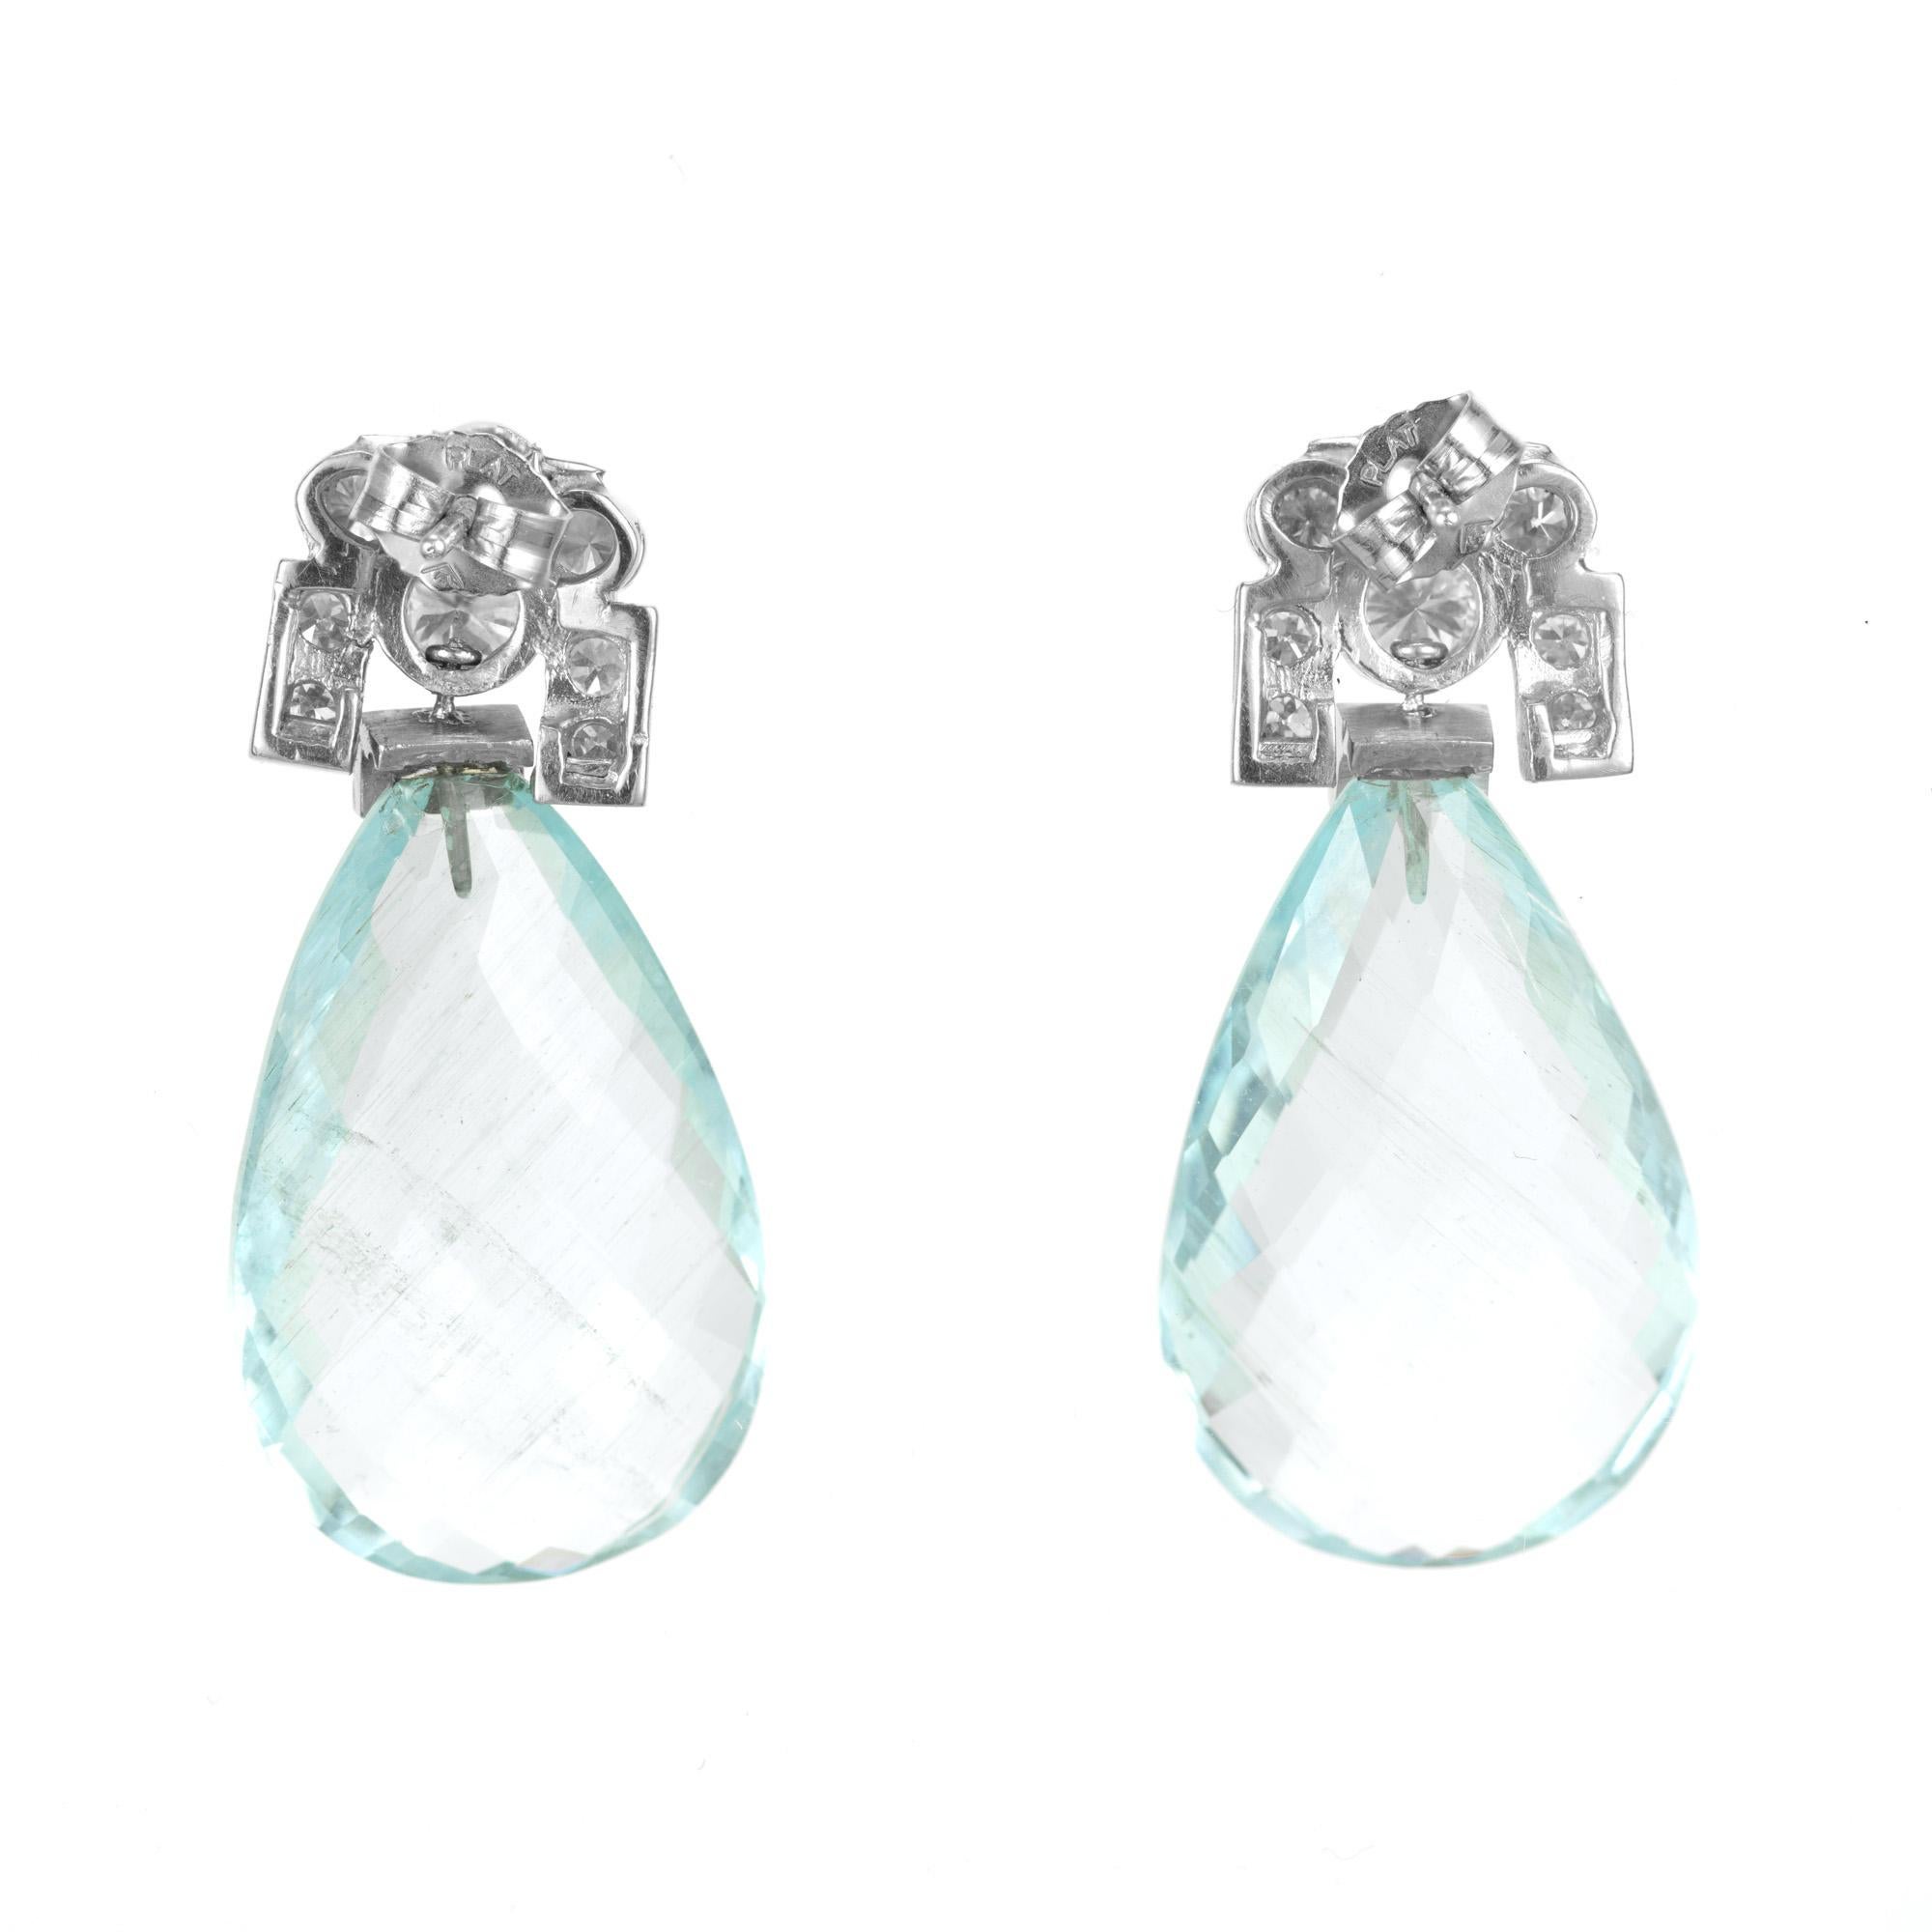 Wunderschöne Briolette und Diamant-Ohrringe. Zwei große birnenförmige, natürliche, unbehandelte Aquamarine von insgesamt 27,00 ct. mit Platinaufsätzen, die mit runden und smaragdgrünen Diamanten im Lünettenschliff verziert sind. Ihr faszinierender